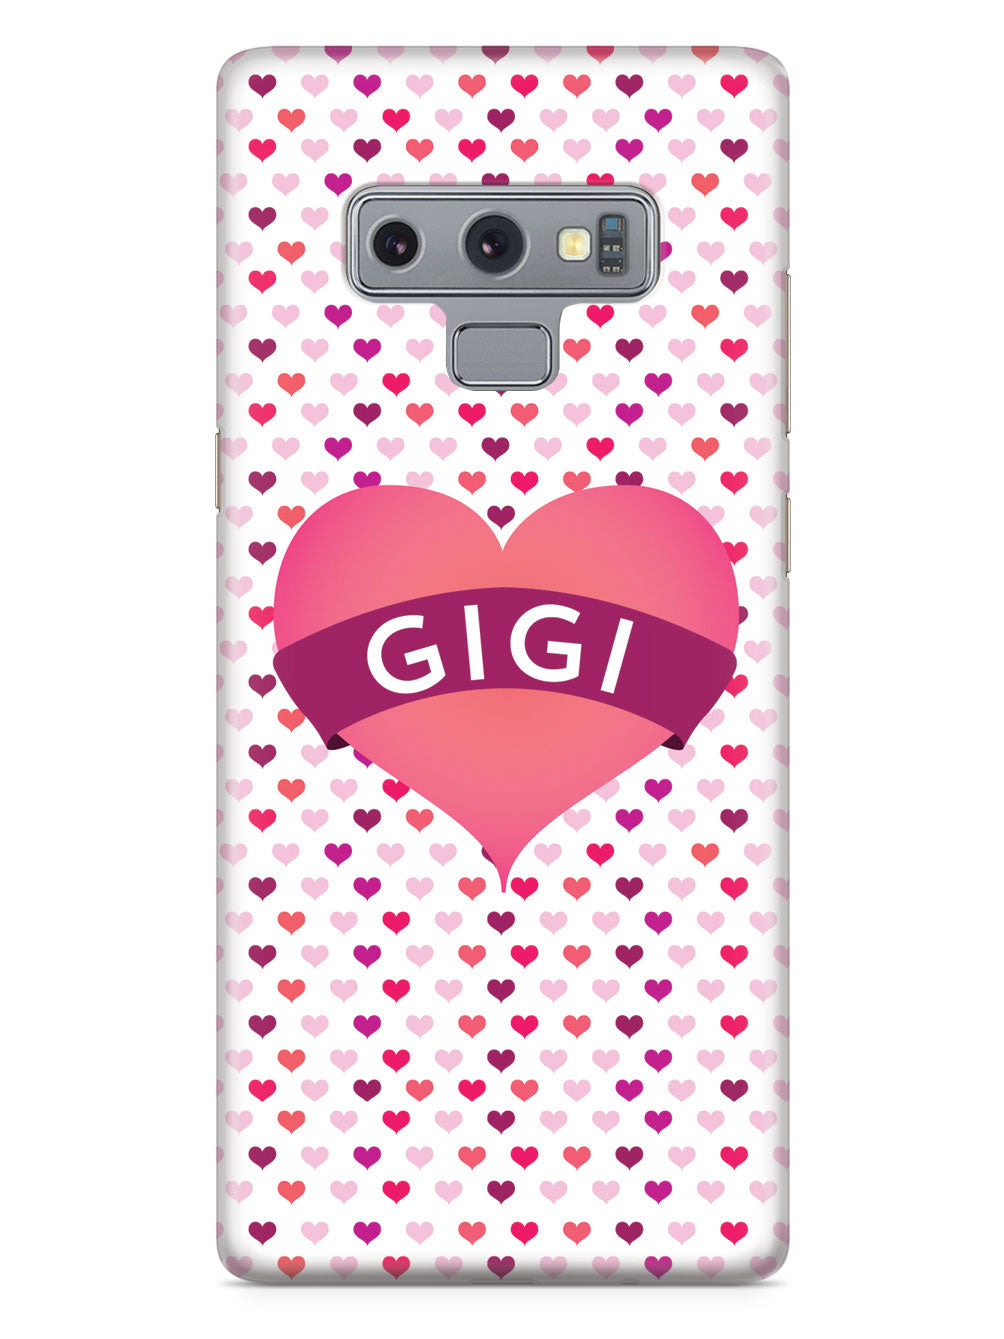 Gigi Heart for Grandma Case